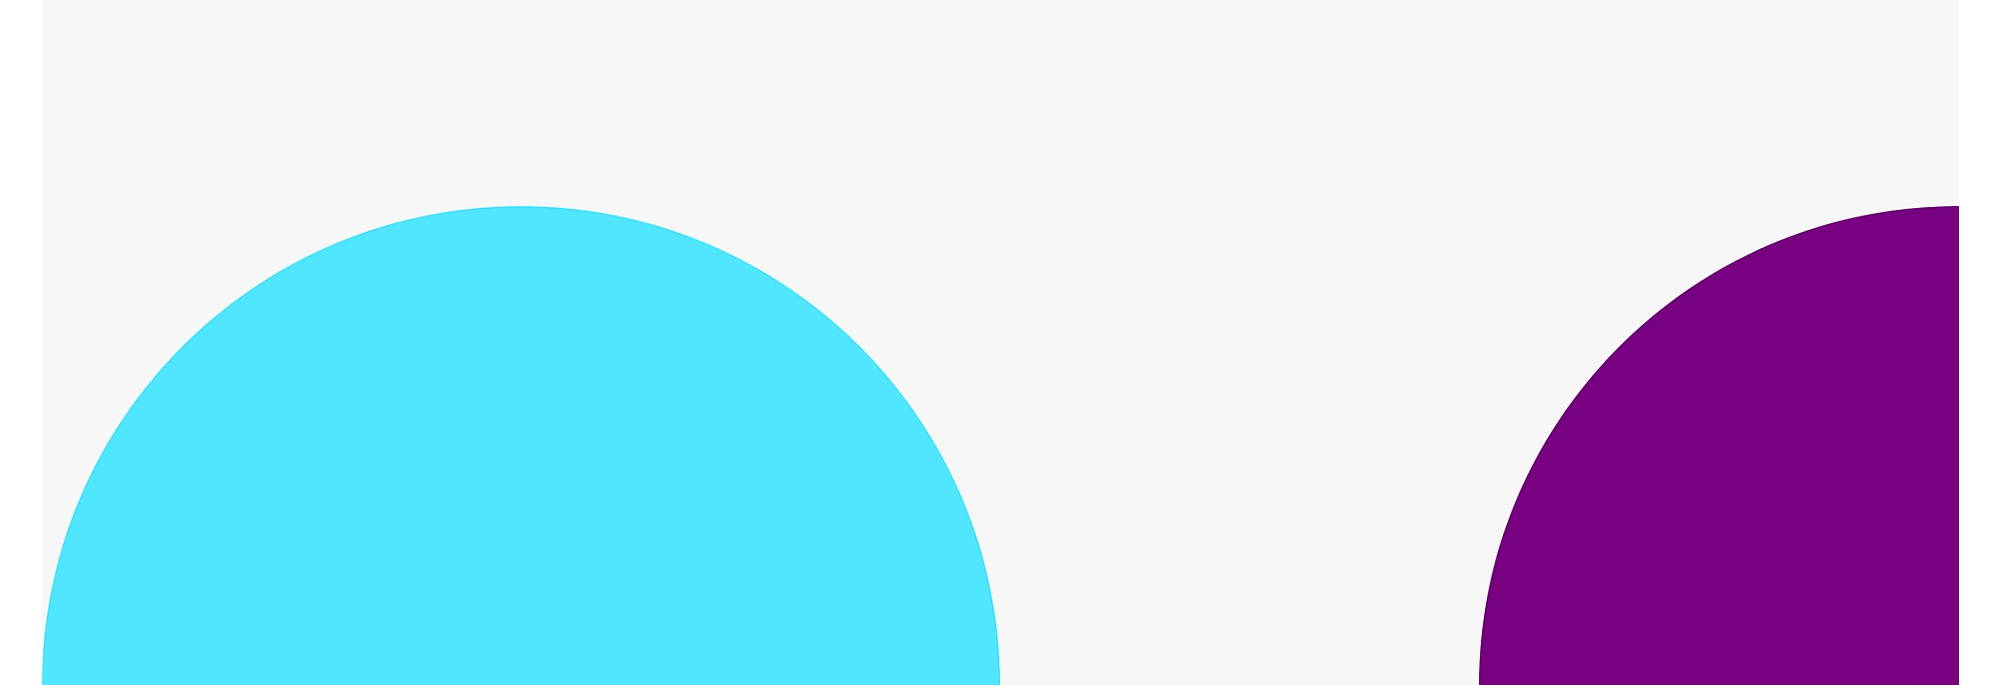 Zwei große, sich teilweise überschneidende Kreise mit einem blauen Kreis auf der linken und einem violetten Kreis auf der rechten Seite 